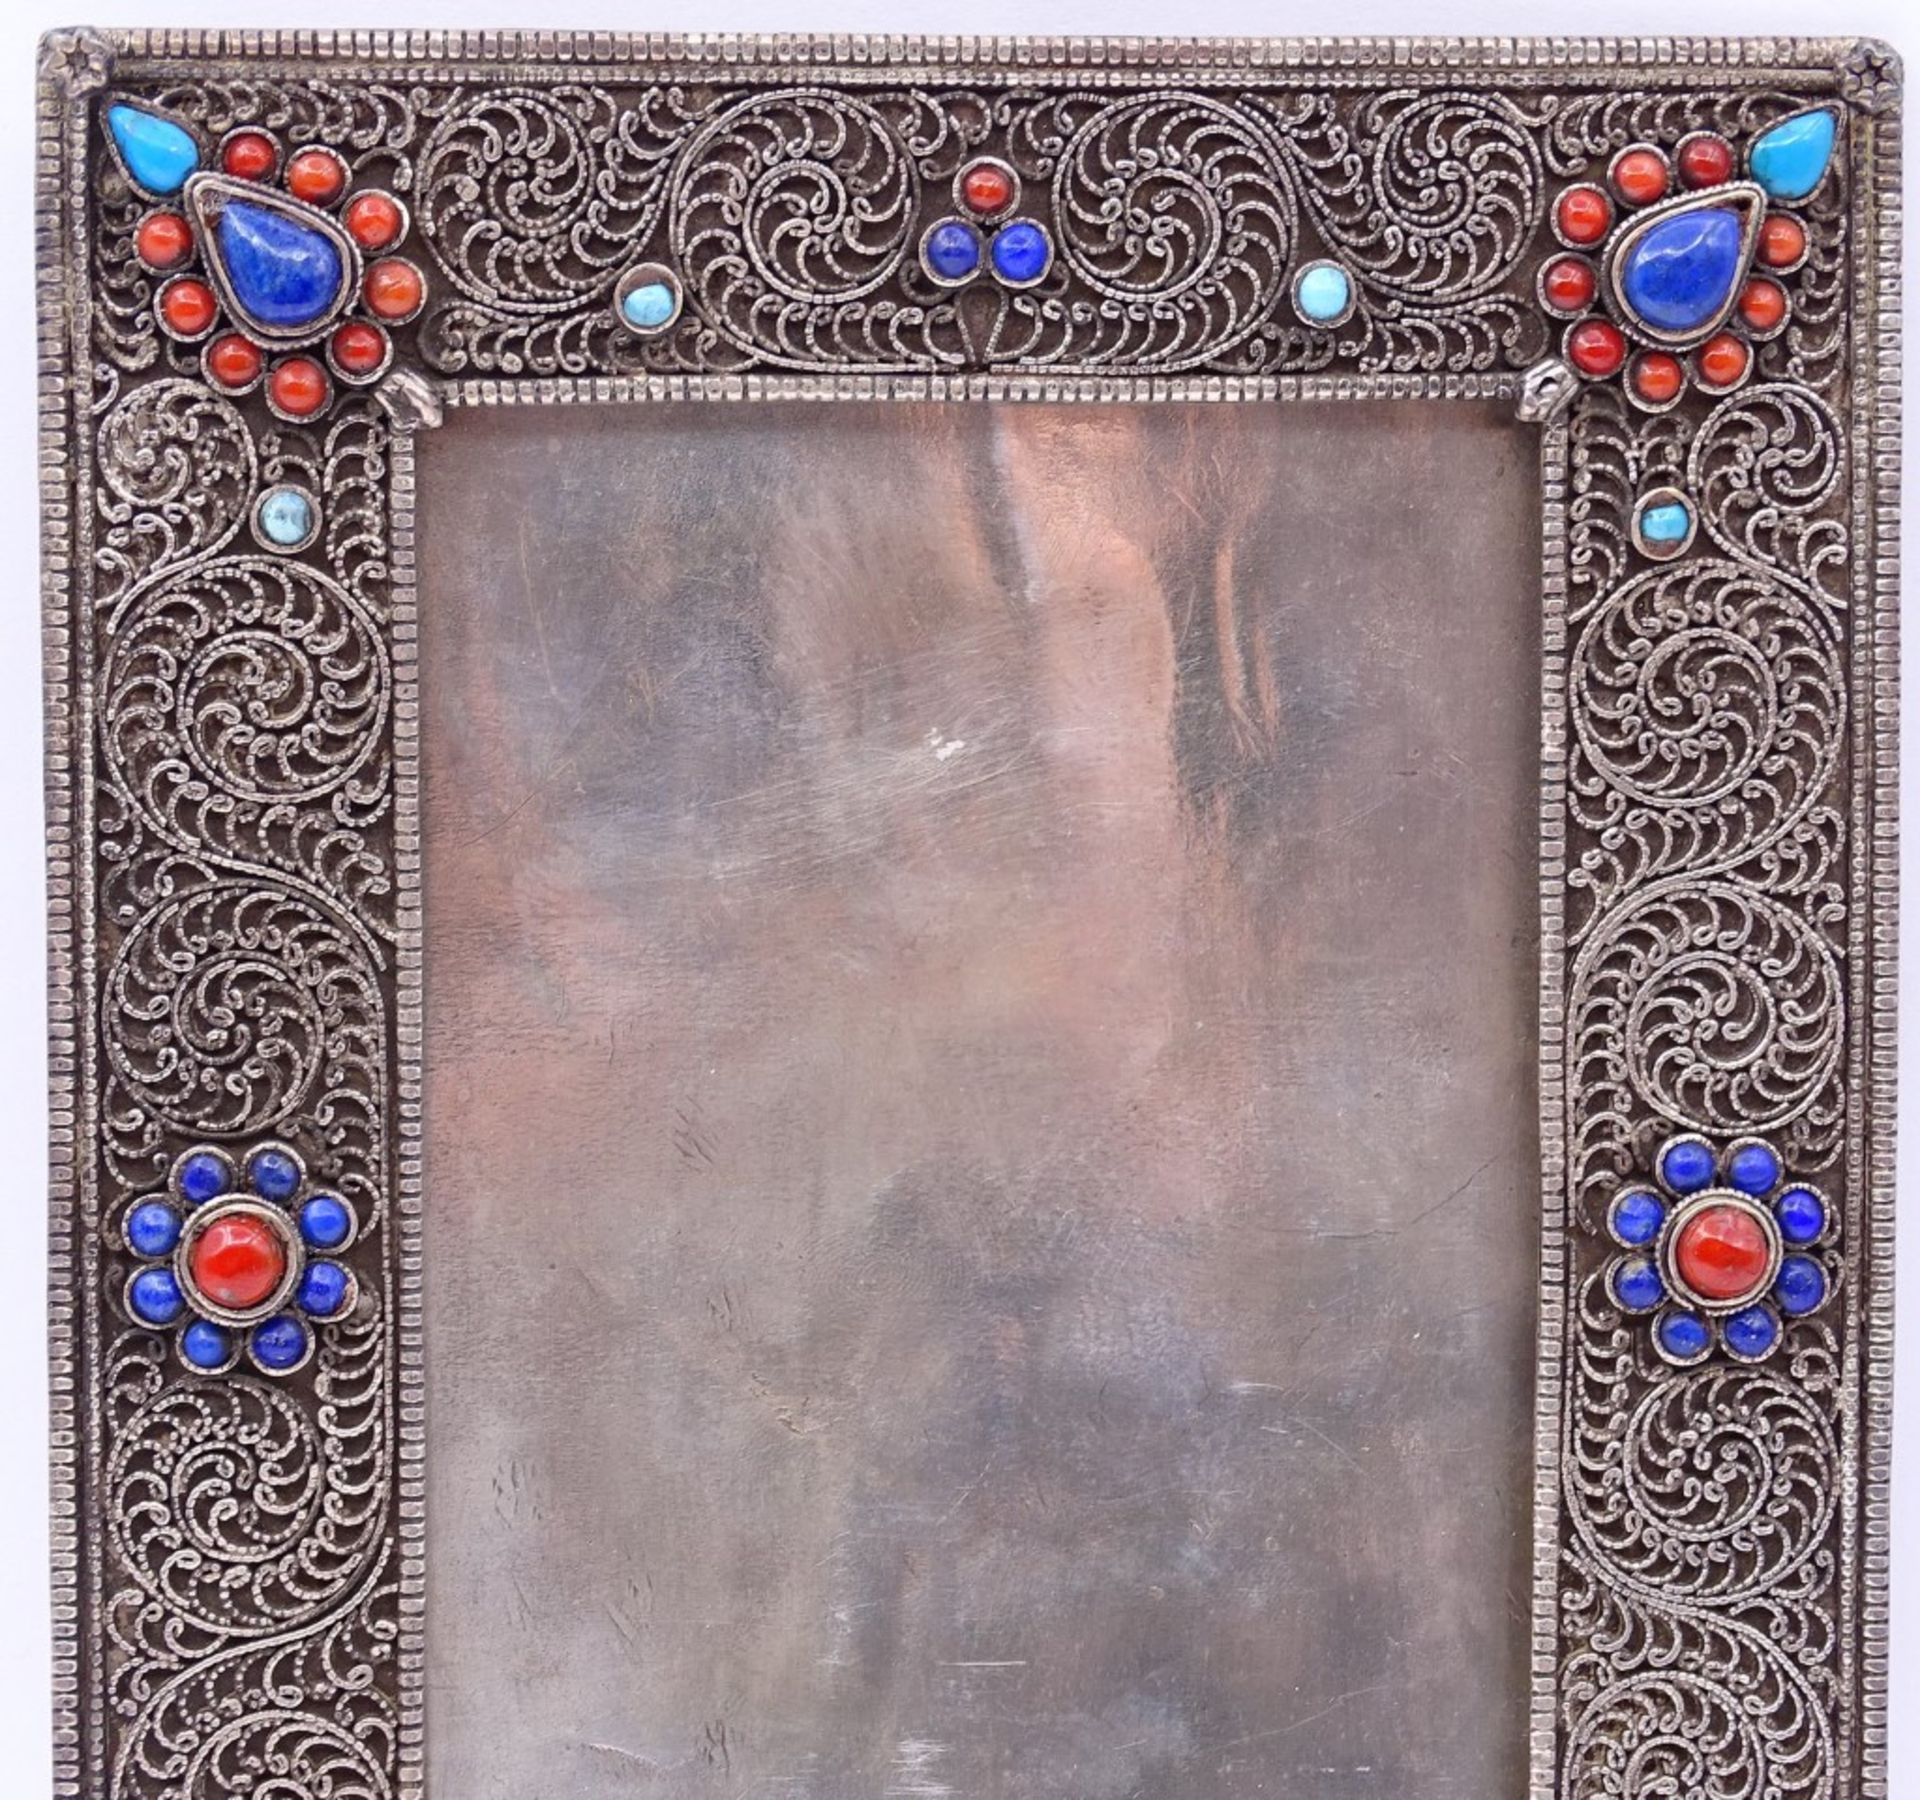 Tischfoto Rahmen in Sterling Silber mit Koralle,türkise und Lapislazuli, 17,5x13,5cm,278gr.,ohne - Bild 2 aus 4